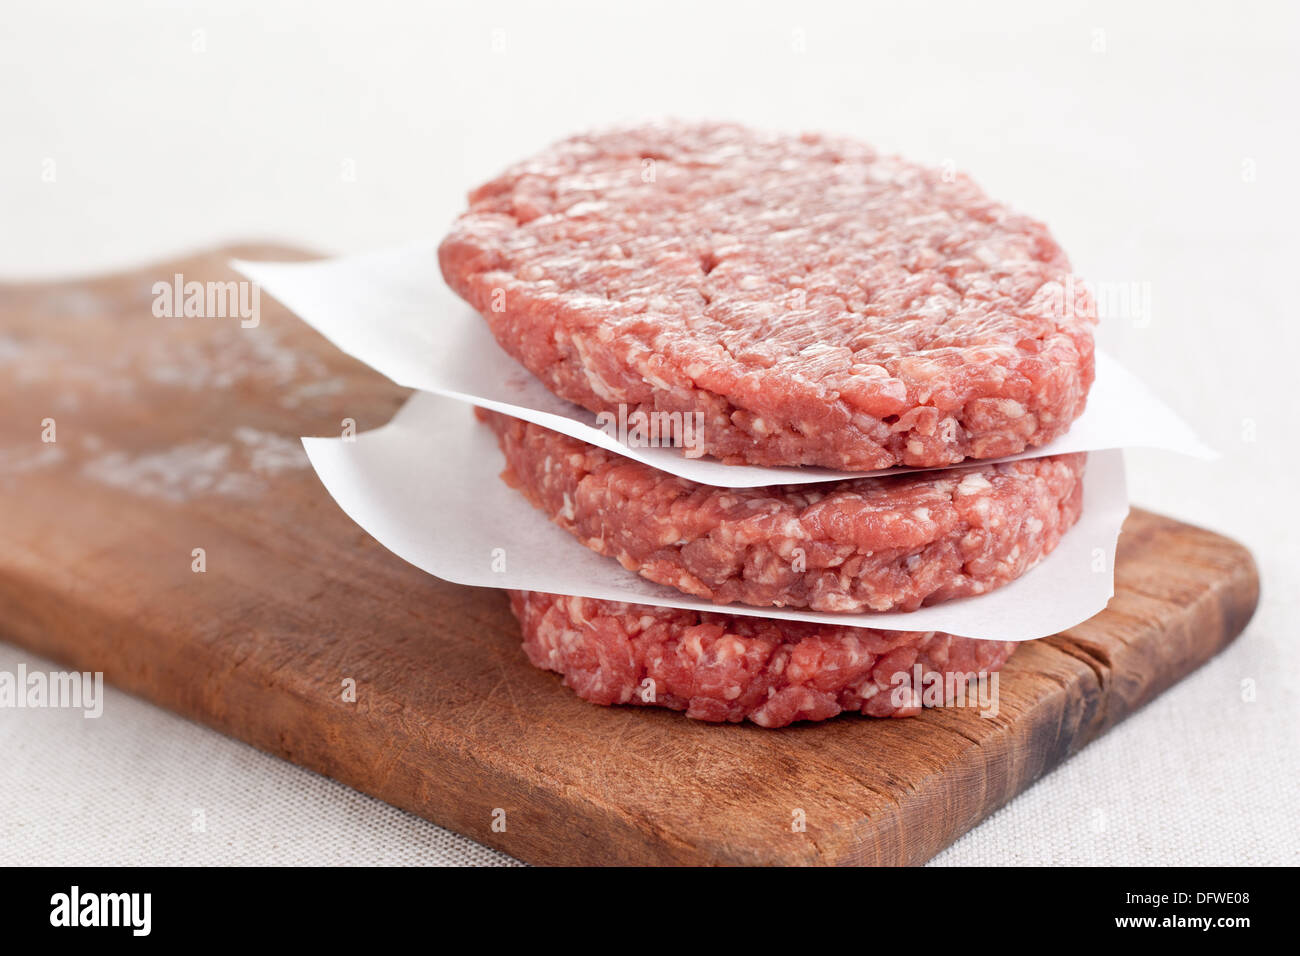 Pile of three raw hamburgers Stock Photo